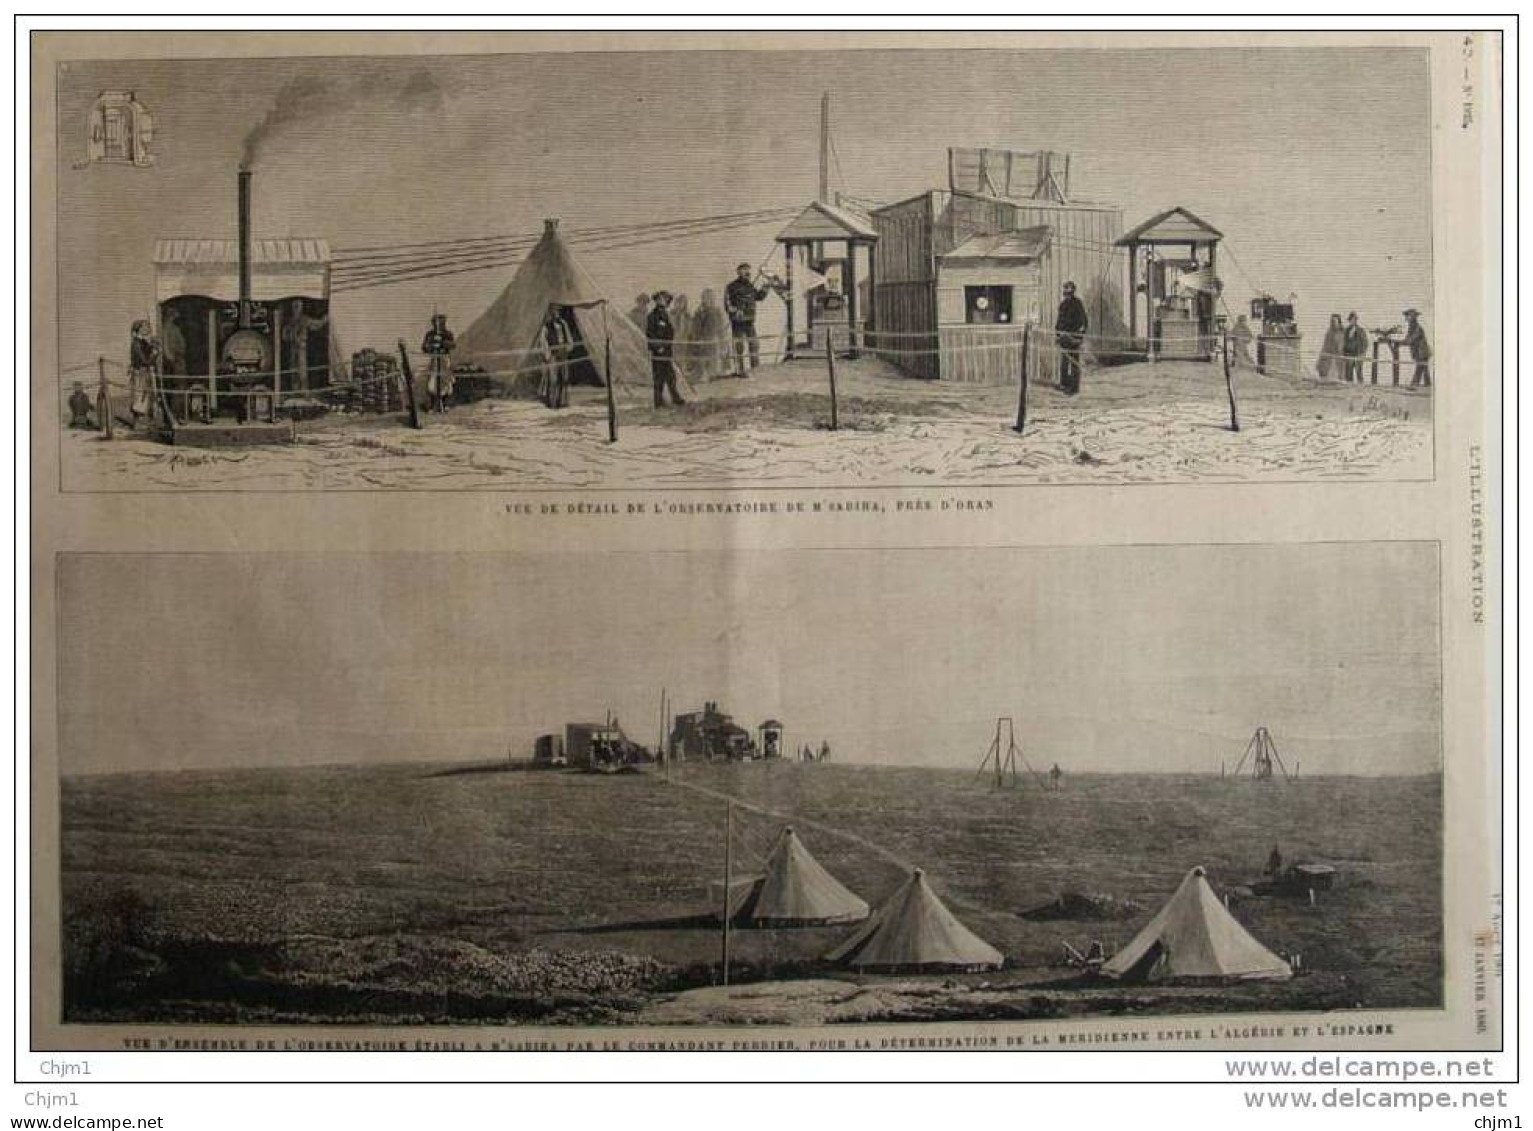 Observatoire De M&acute;Sabiha Près D&acute;Oran - Page Original - 1880 - Historical Documents